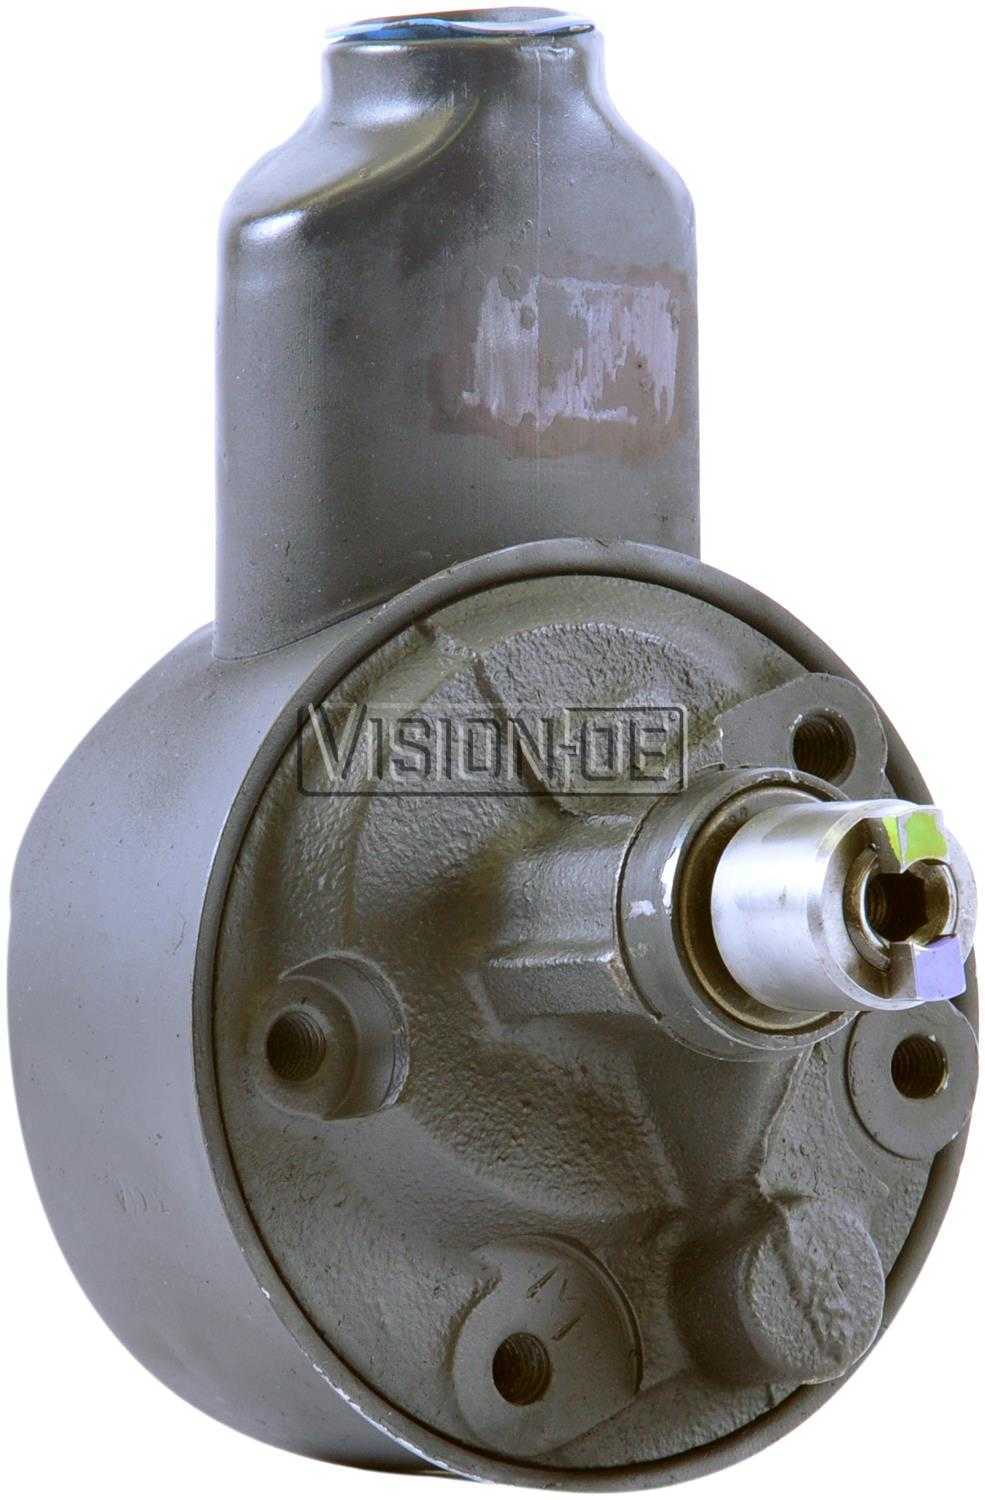 VISION-OE - Reman Power Steering Pump - VOE 731-2214